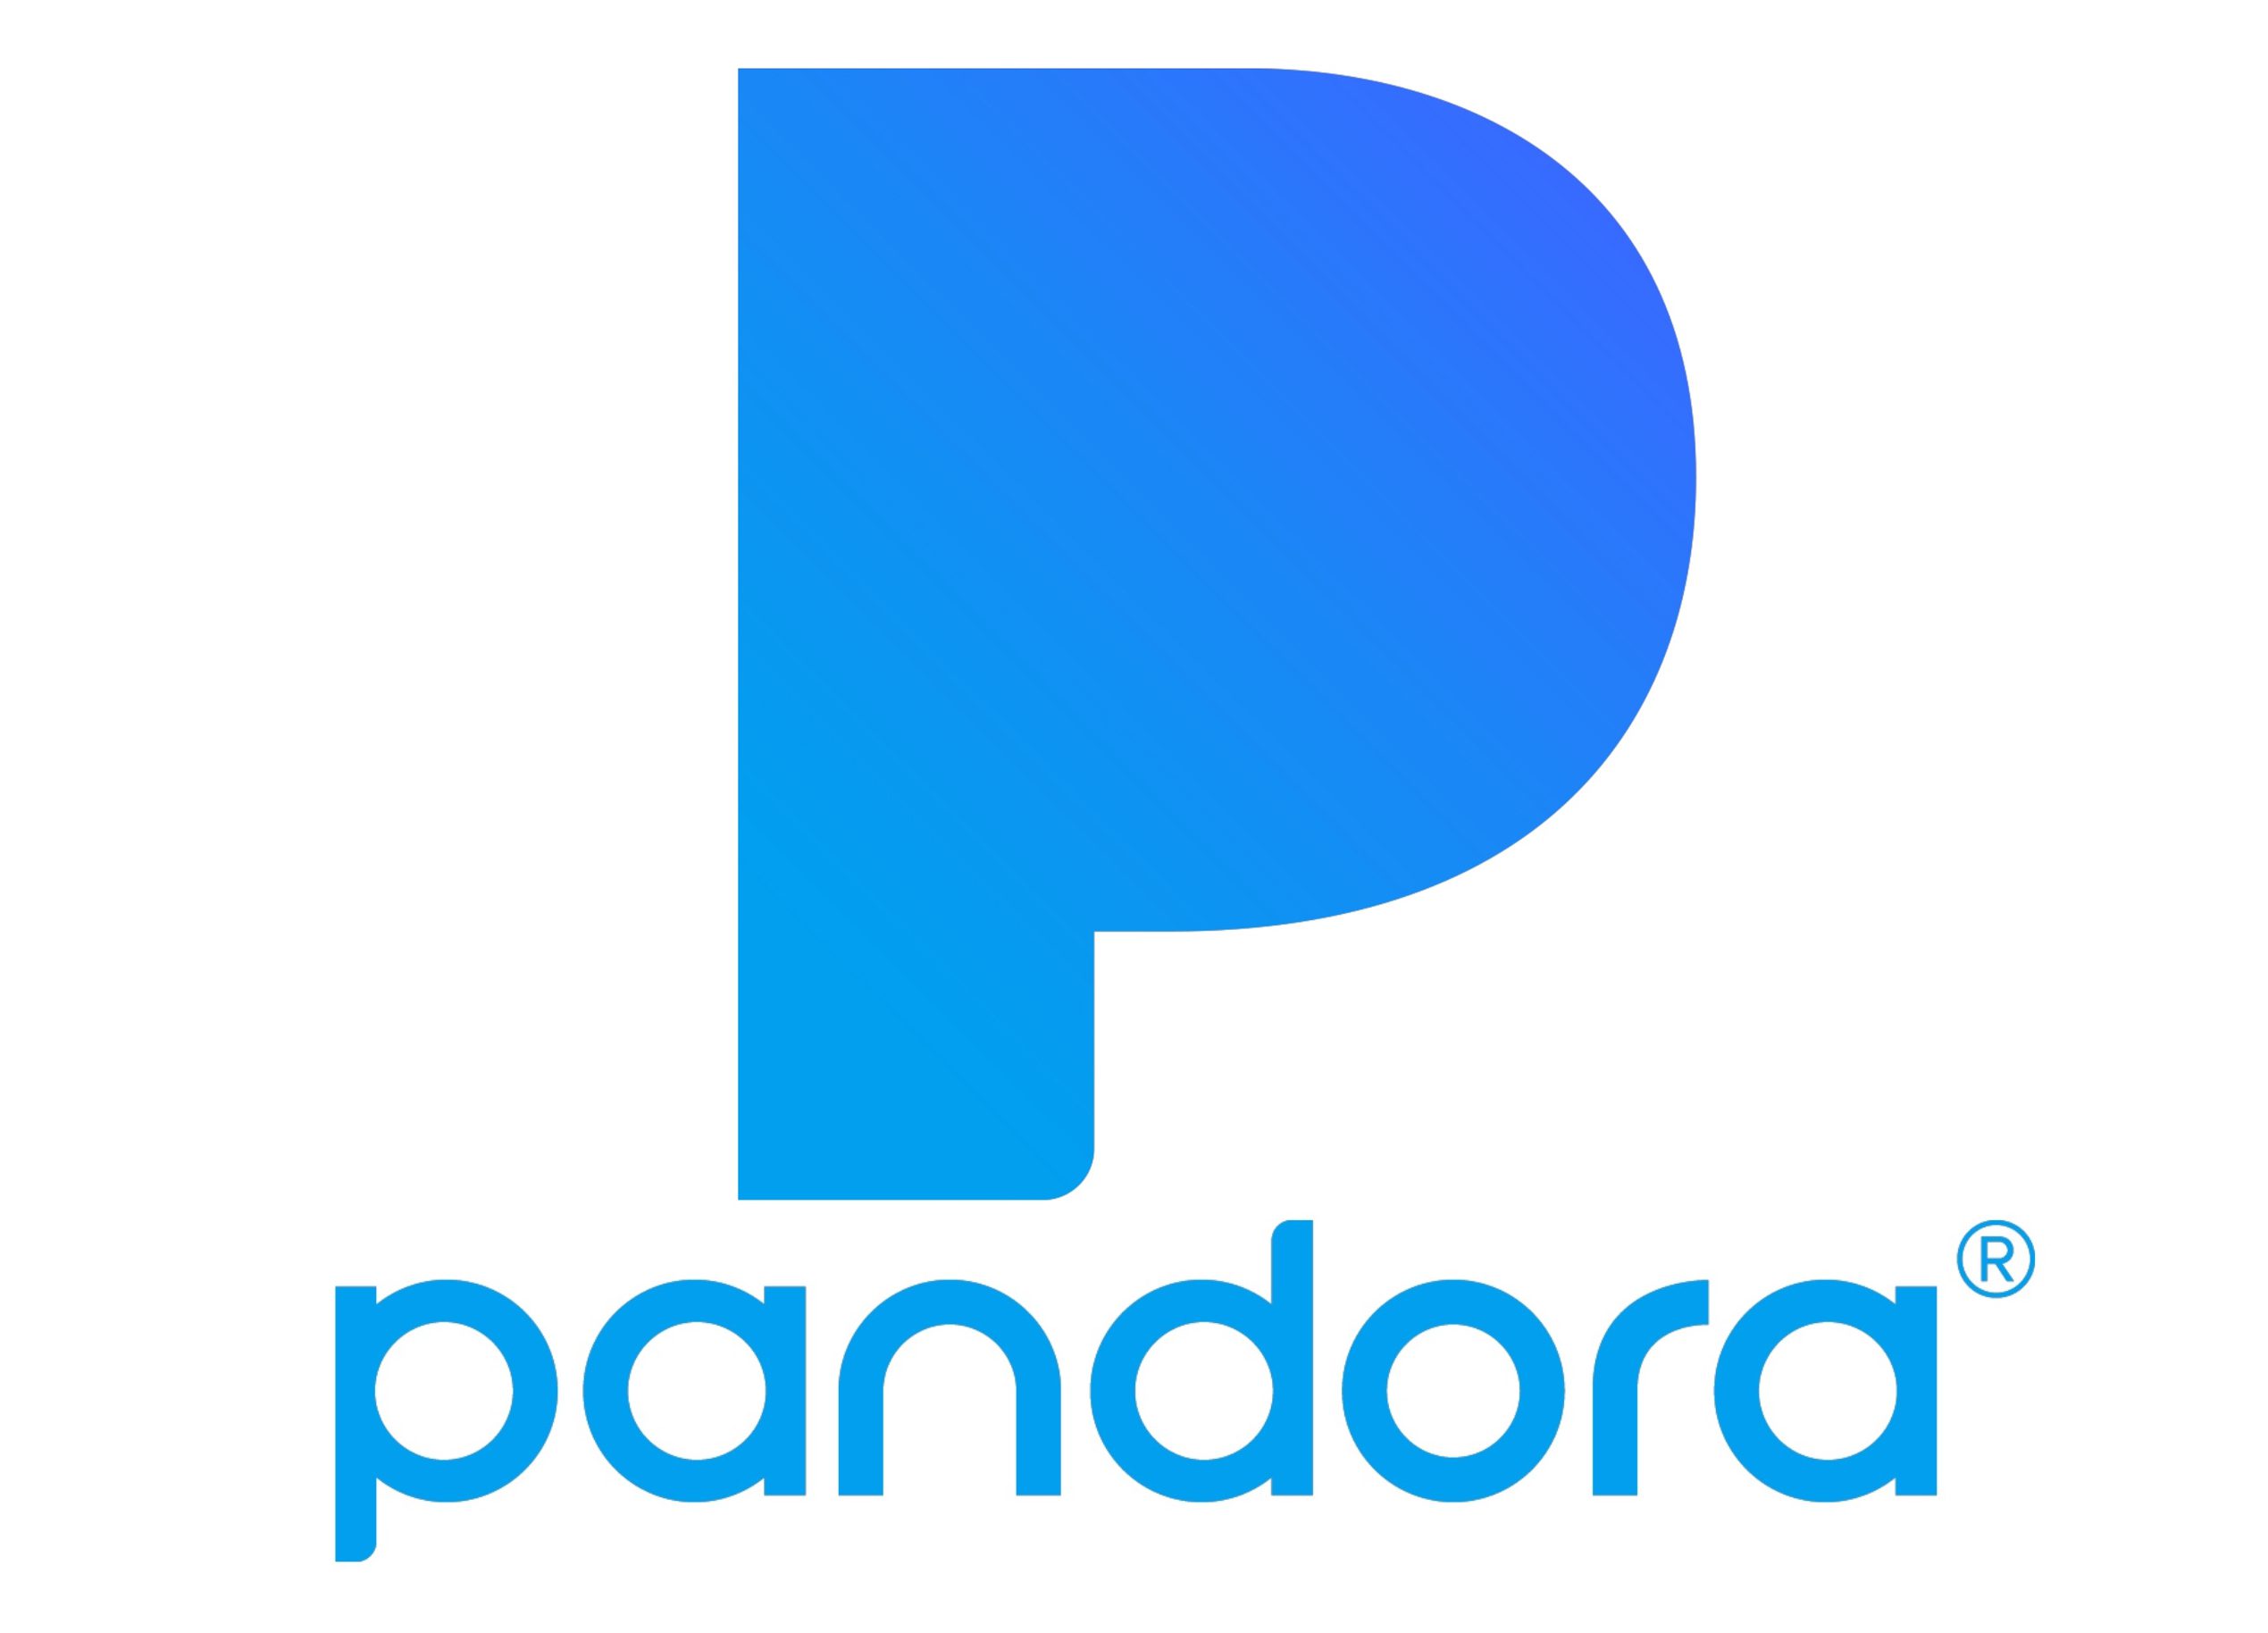 Contact of Pandora (music) customer service